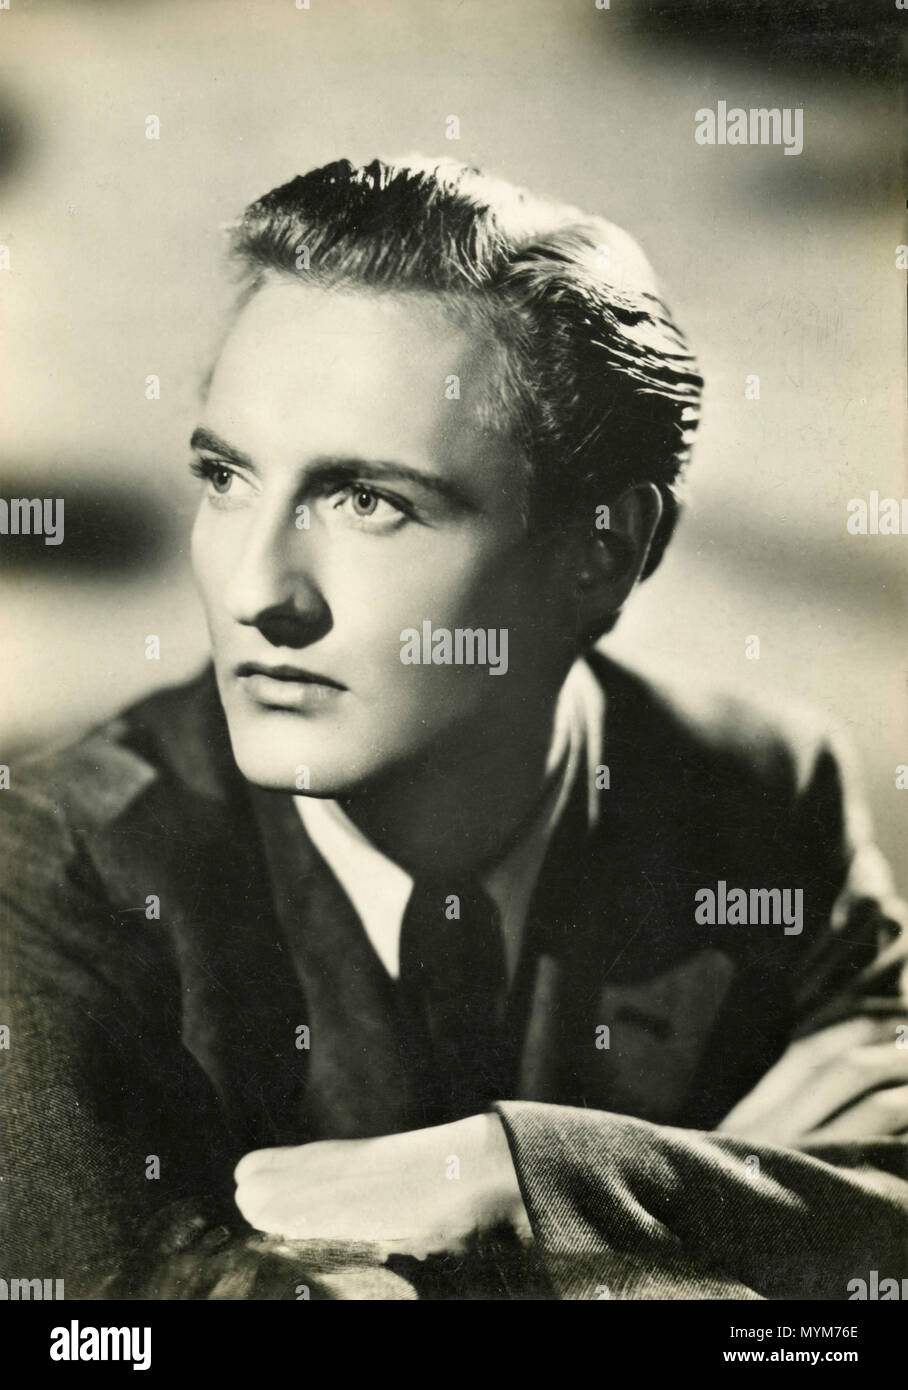 Portrait de l'acteur américain Anthony James dans le film Les Derniers Jours de Dolwyn, 1949 Banque D'Images